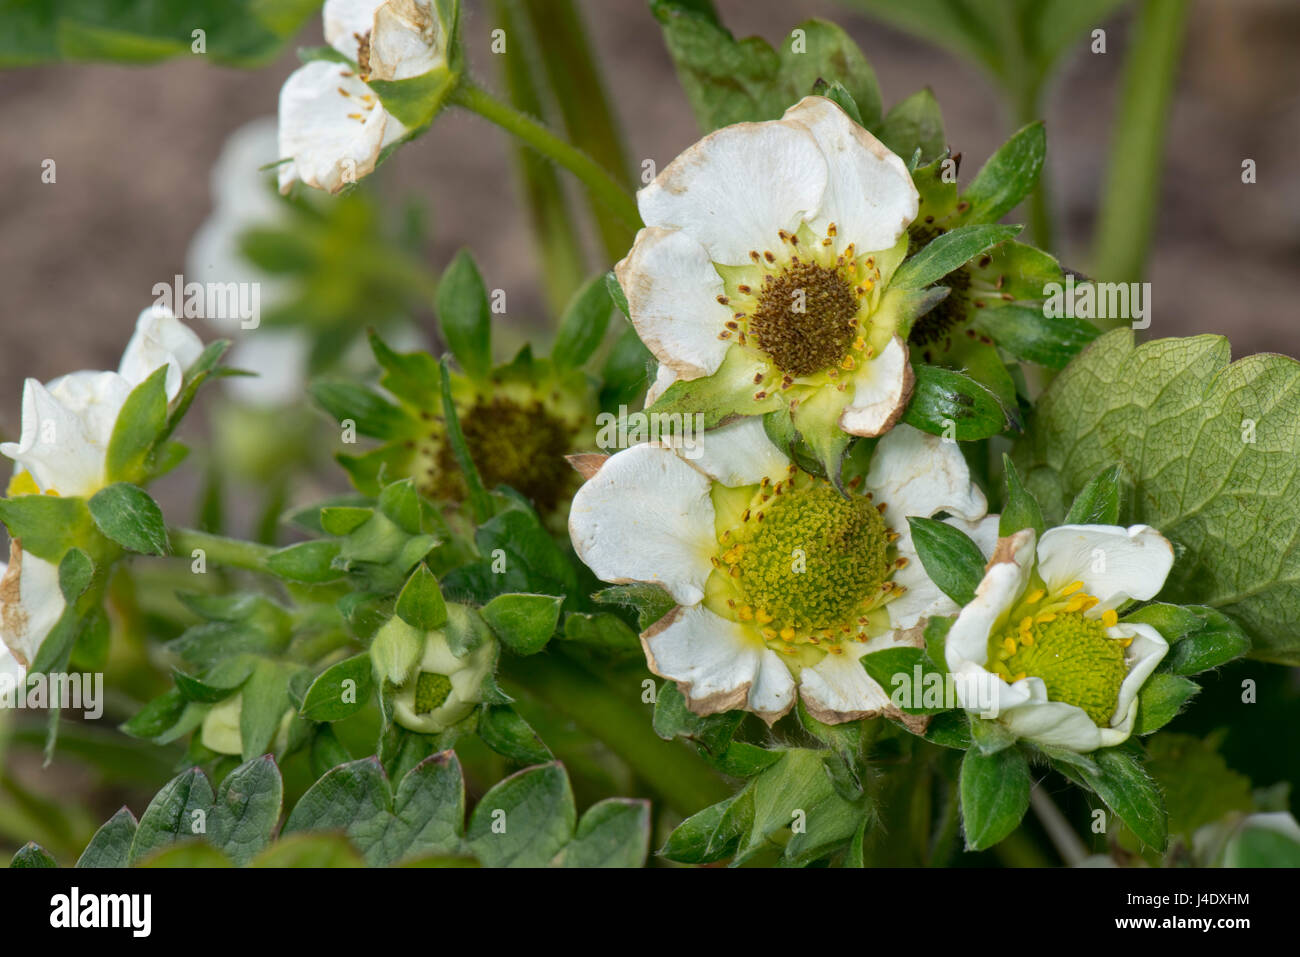 Ende der Saison frost Schaden verursachenden Schwärzung der Stempel, weibliche Blütenteile in Erdbeere Blumen und einige Nekrose, die Blütenblätter, Berkshire, Mai Stockfoto